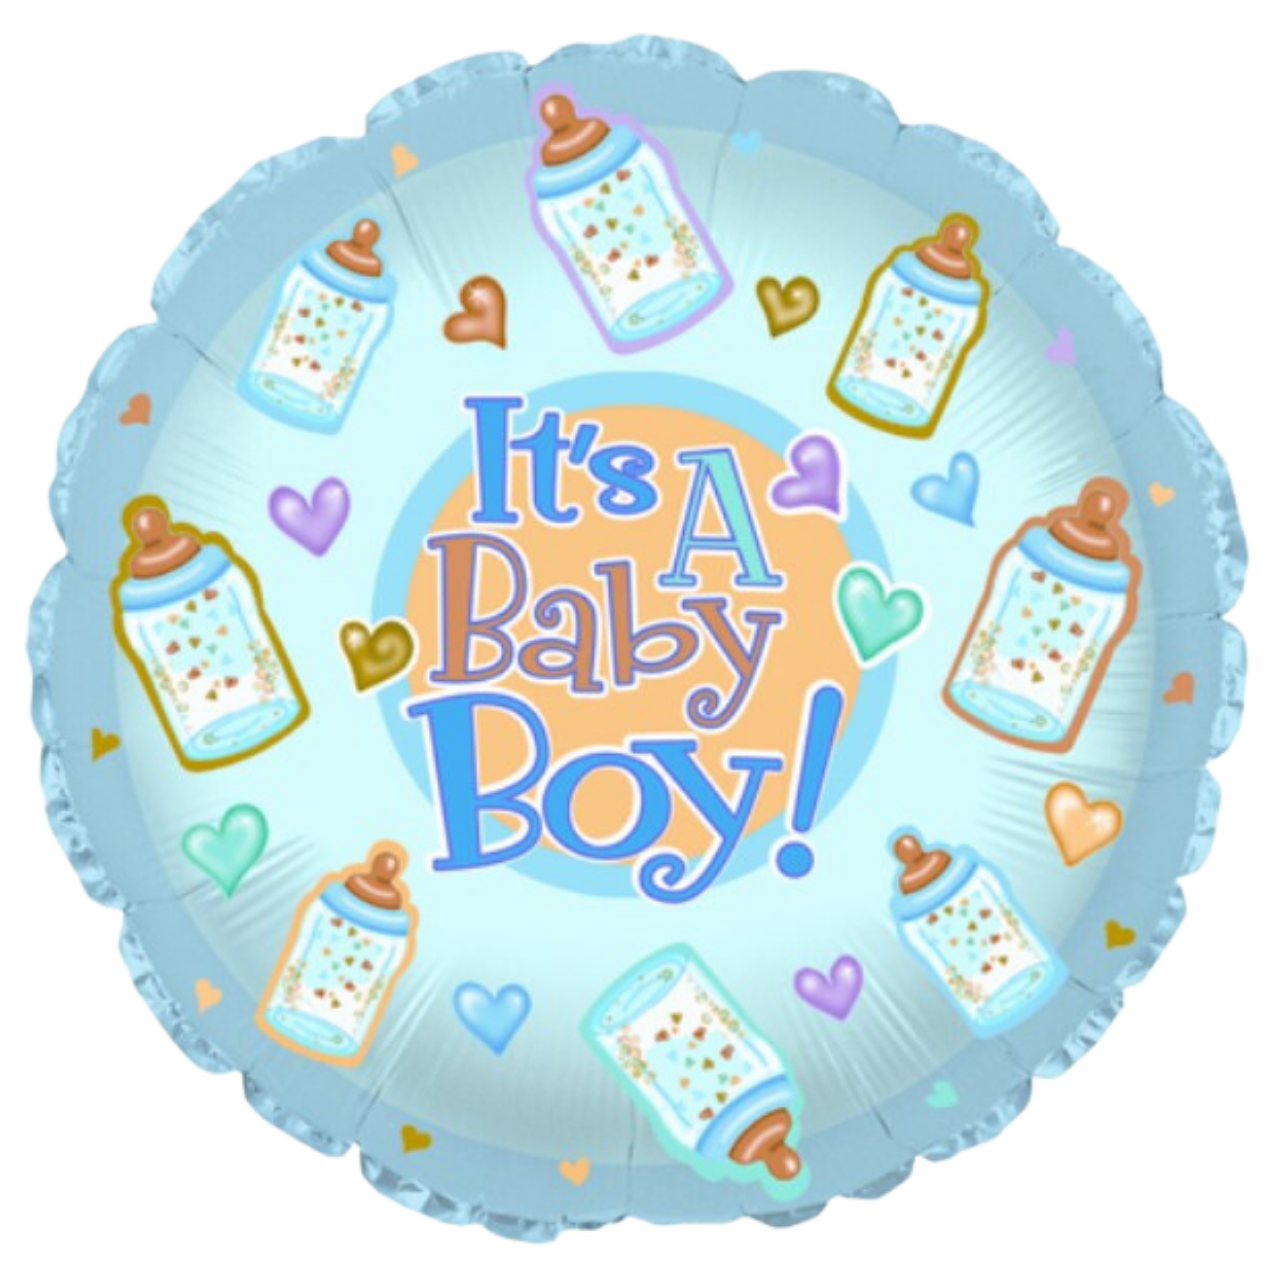 Baby Boy Balloon Collection